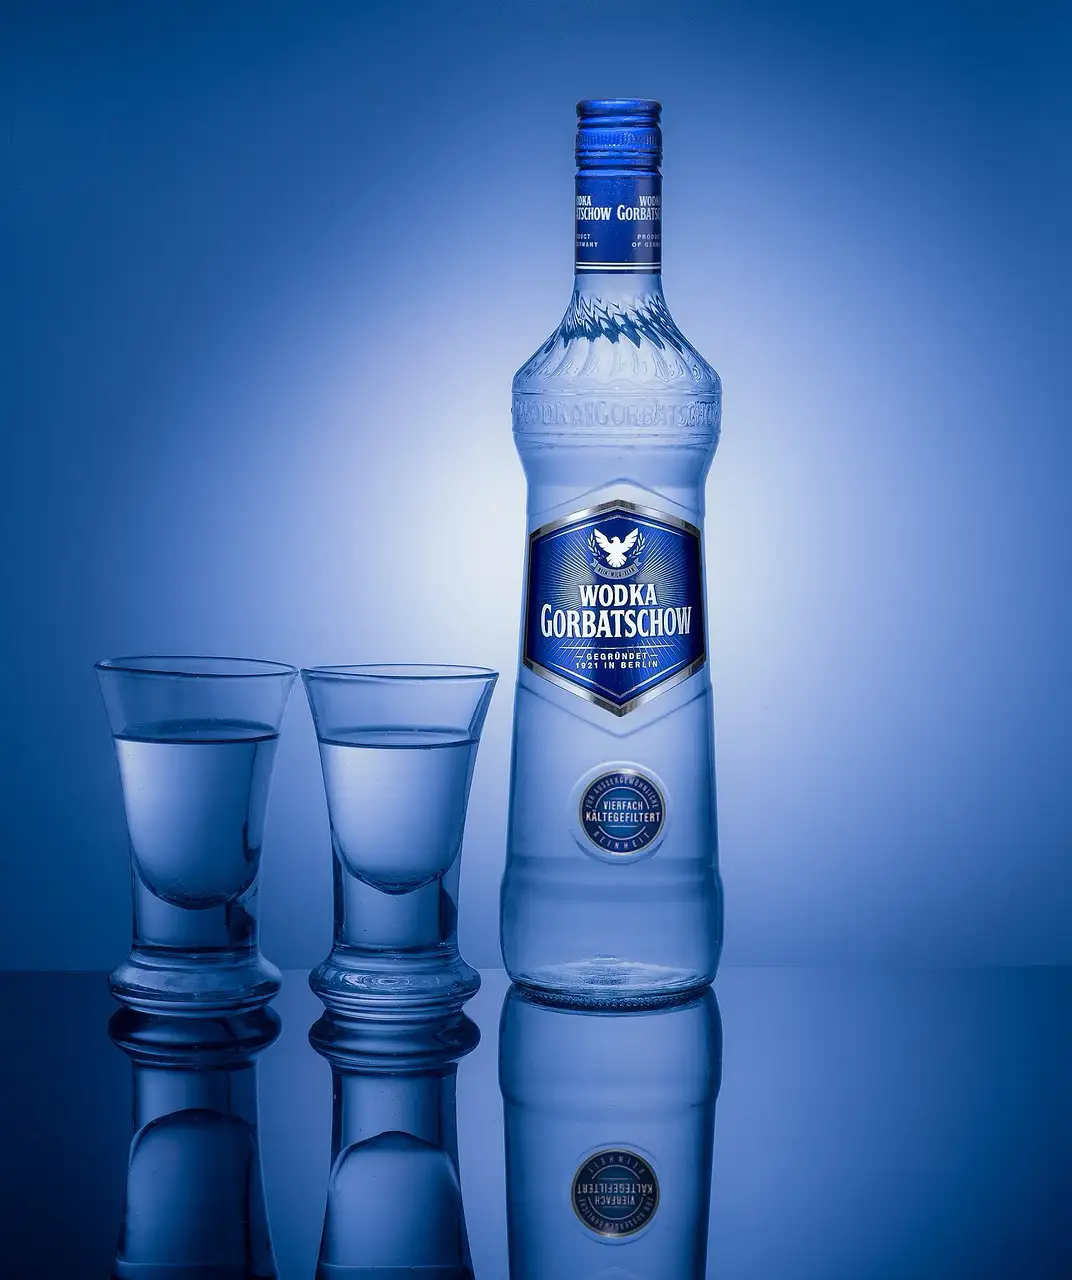 Vodka y Coctelería: domina el arte de la mixología con nuestras guías sobre cómo hacer los mejores cócteles con vodka.